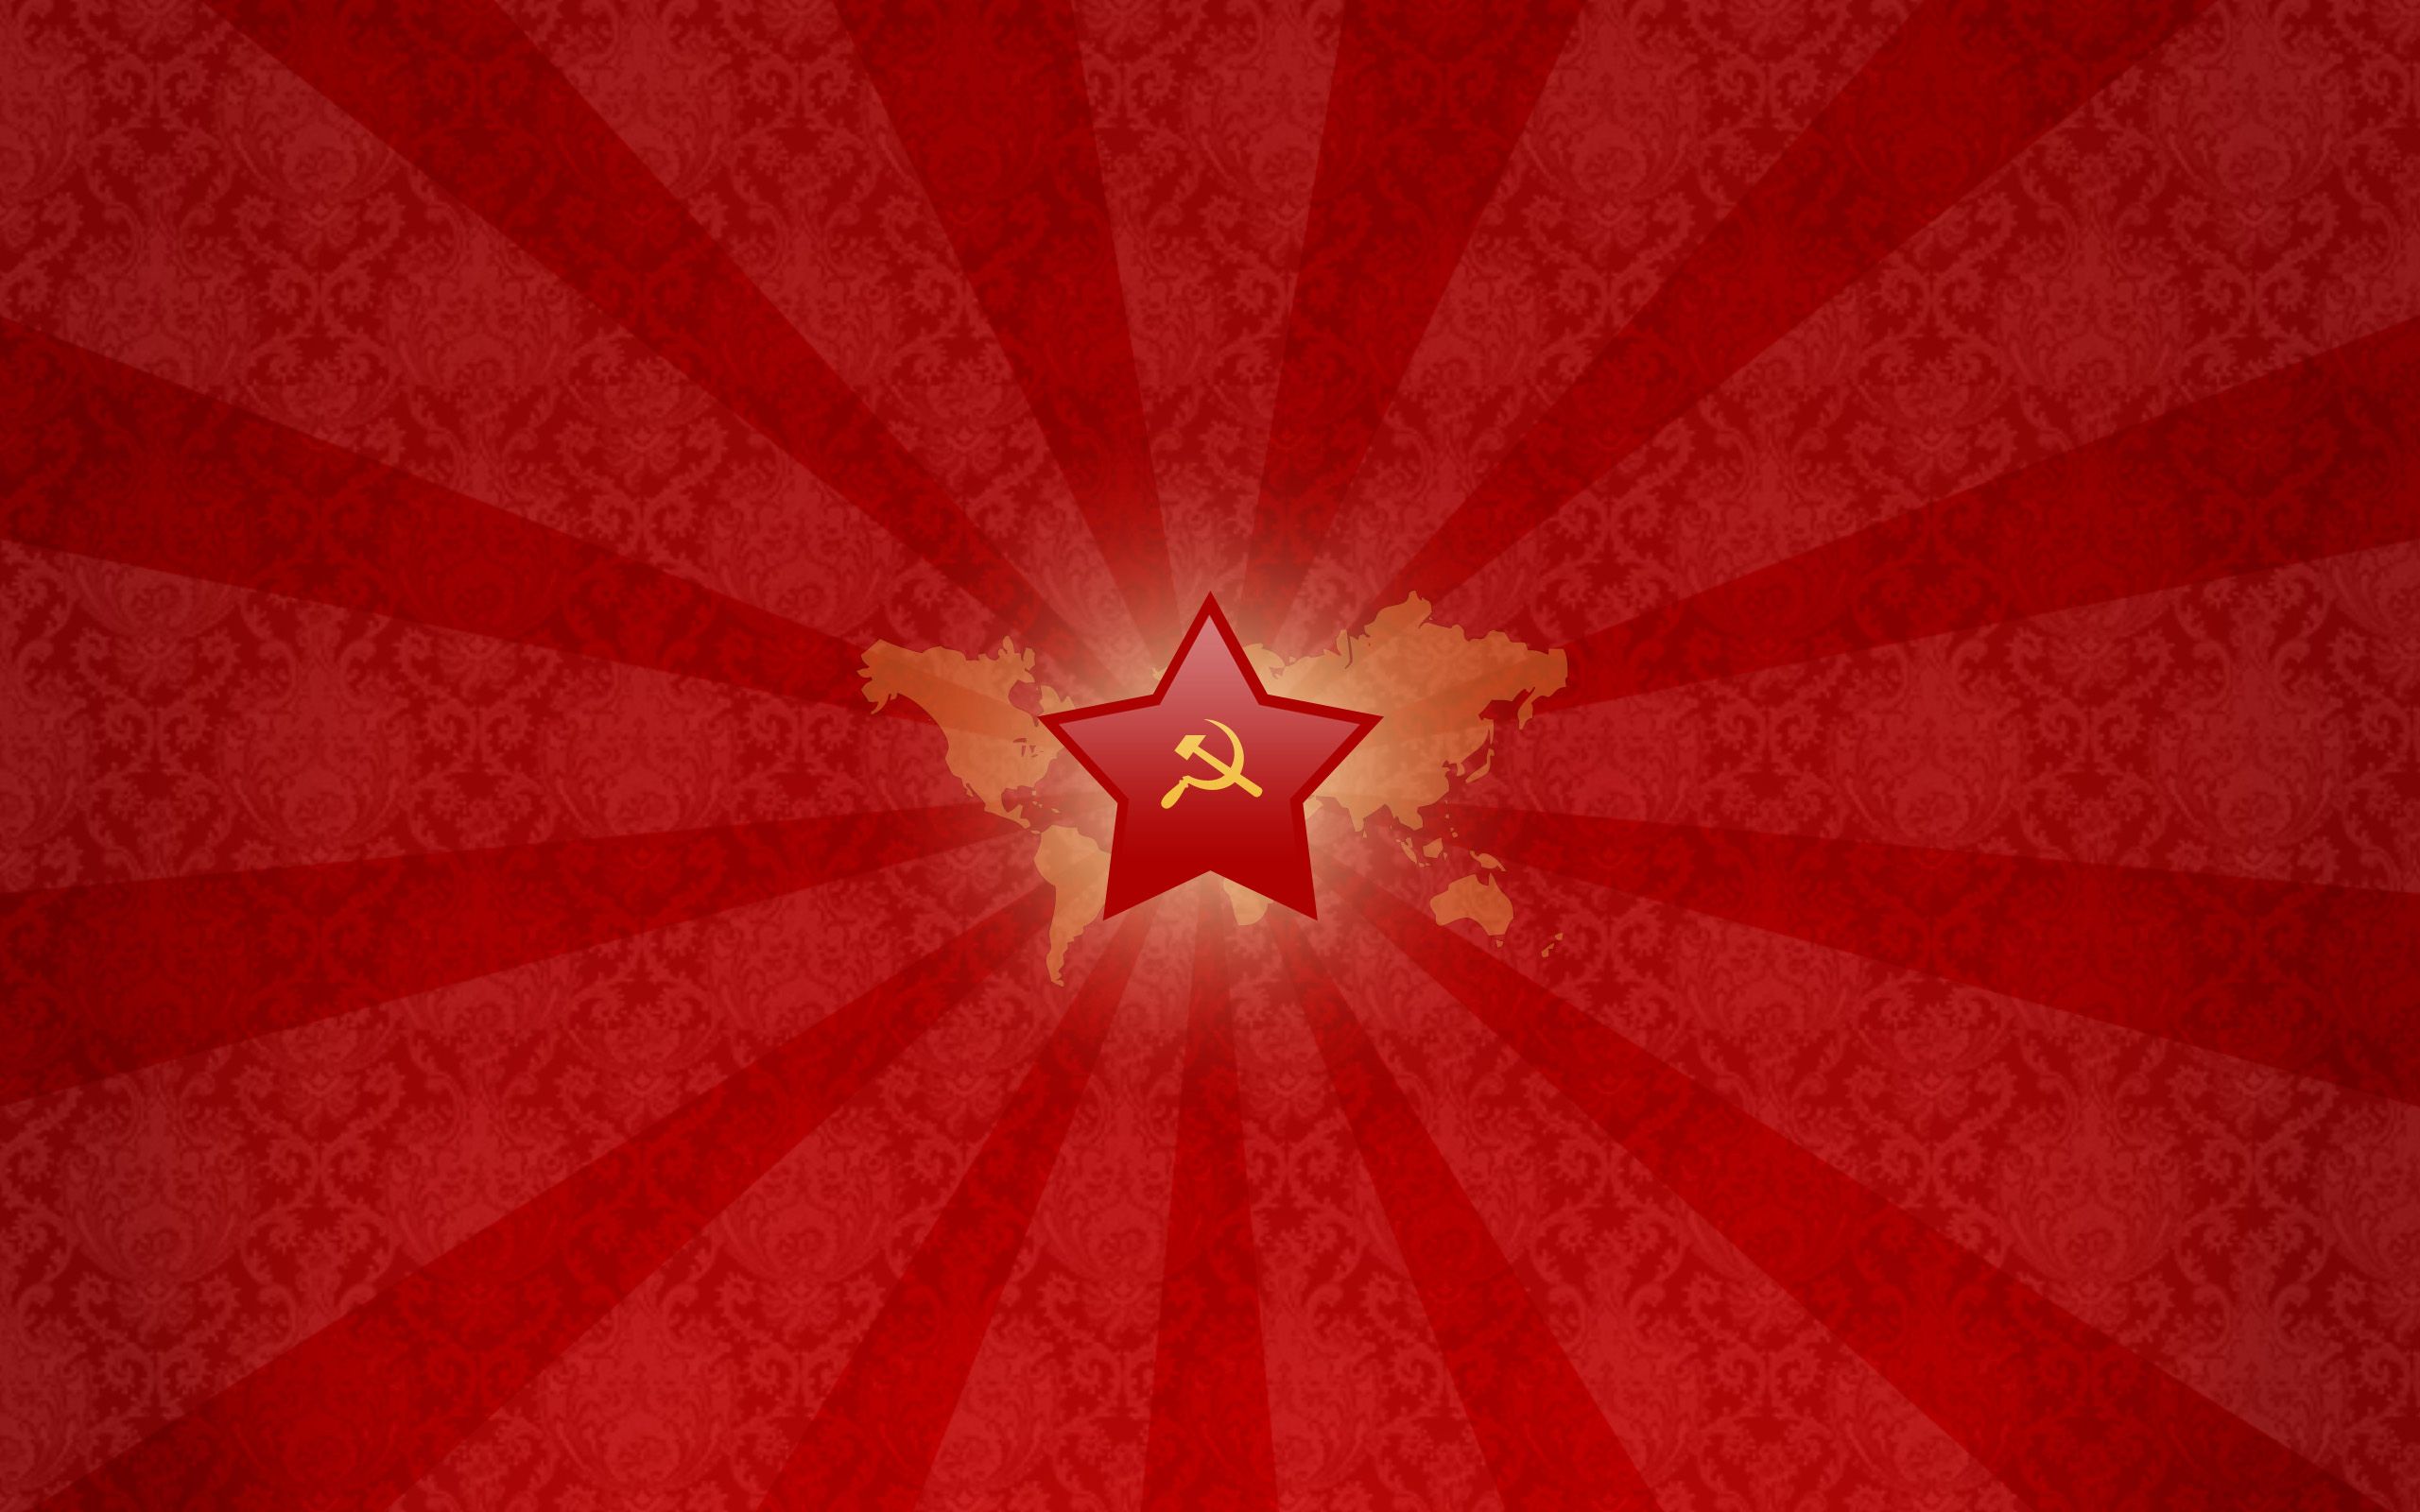 URSS wallpaper. URSS